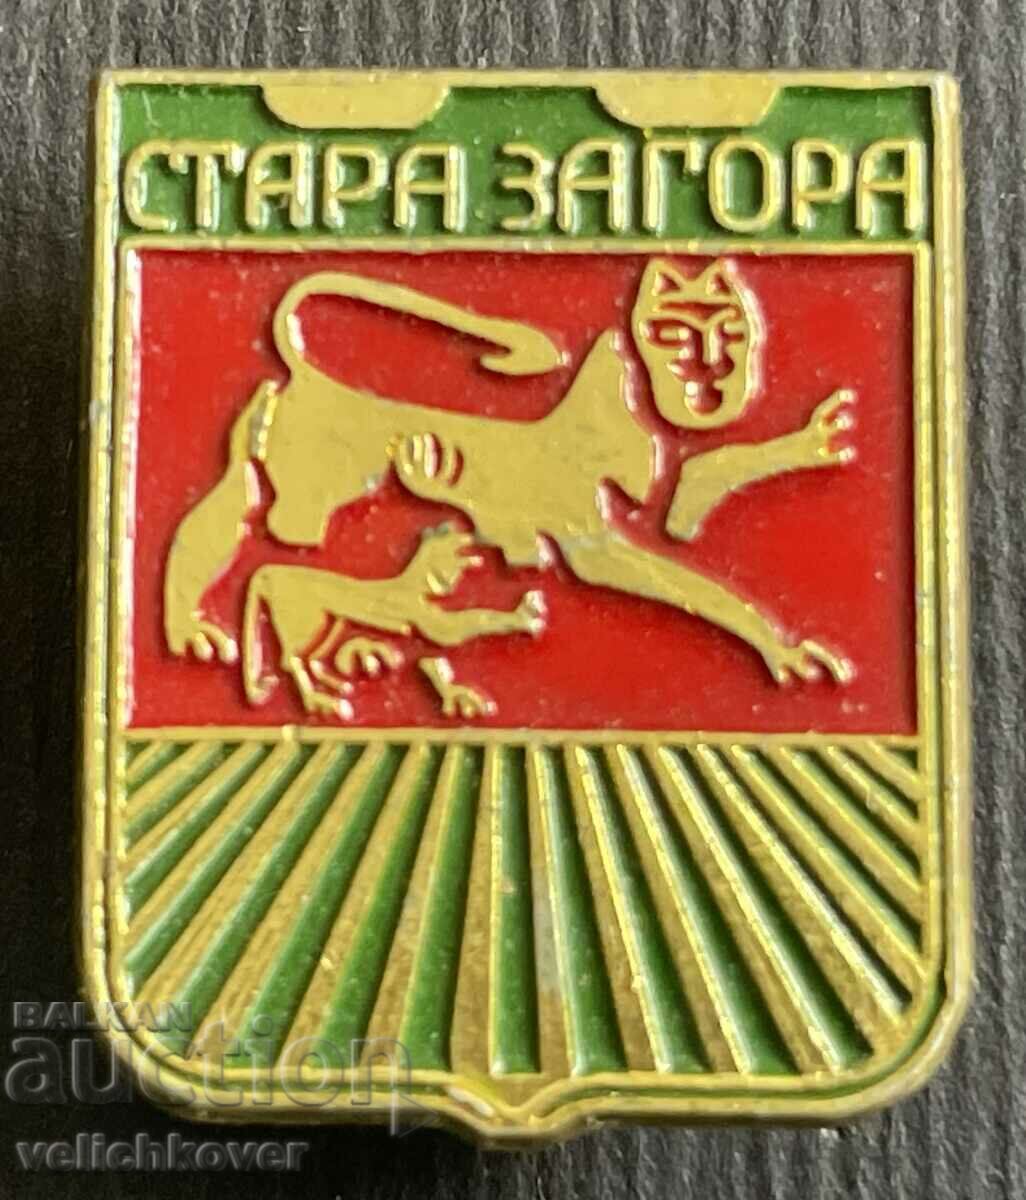 36866 Εθνόσημο της Βουλγαρίας Πόλη της Στάρα Ζαγόρα